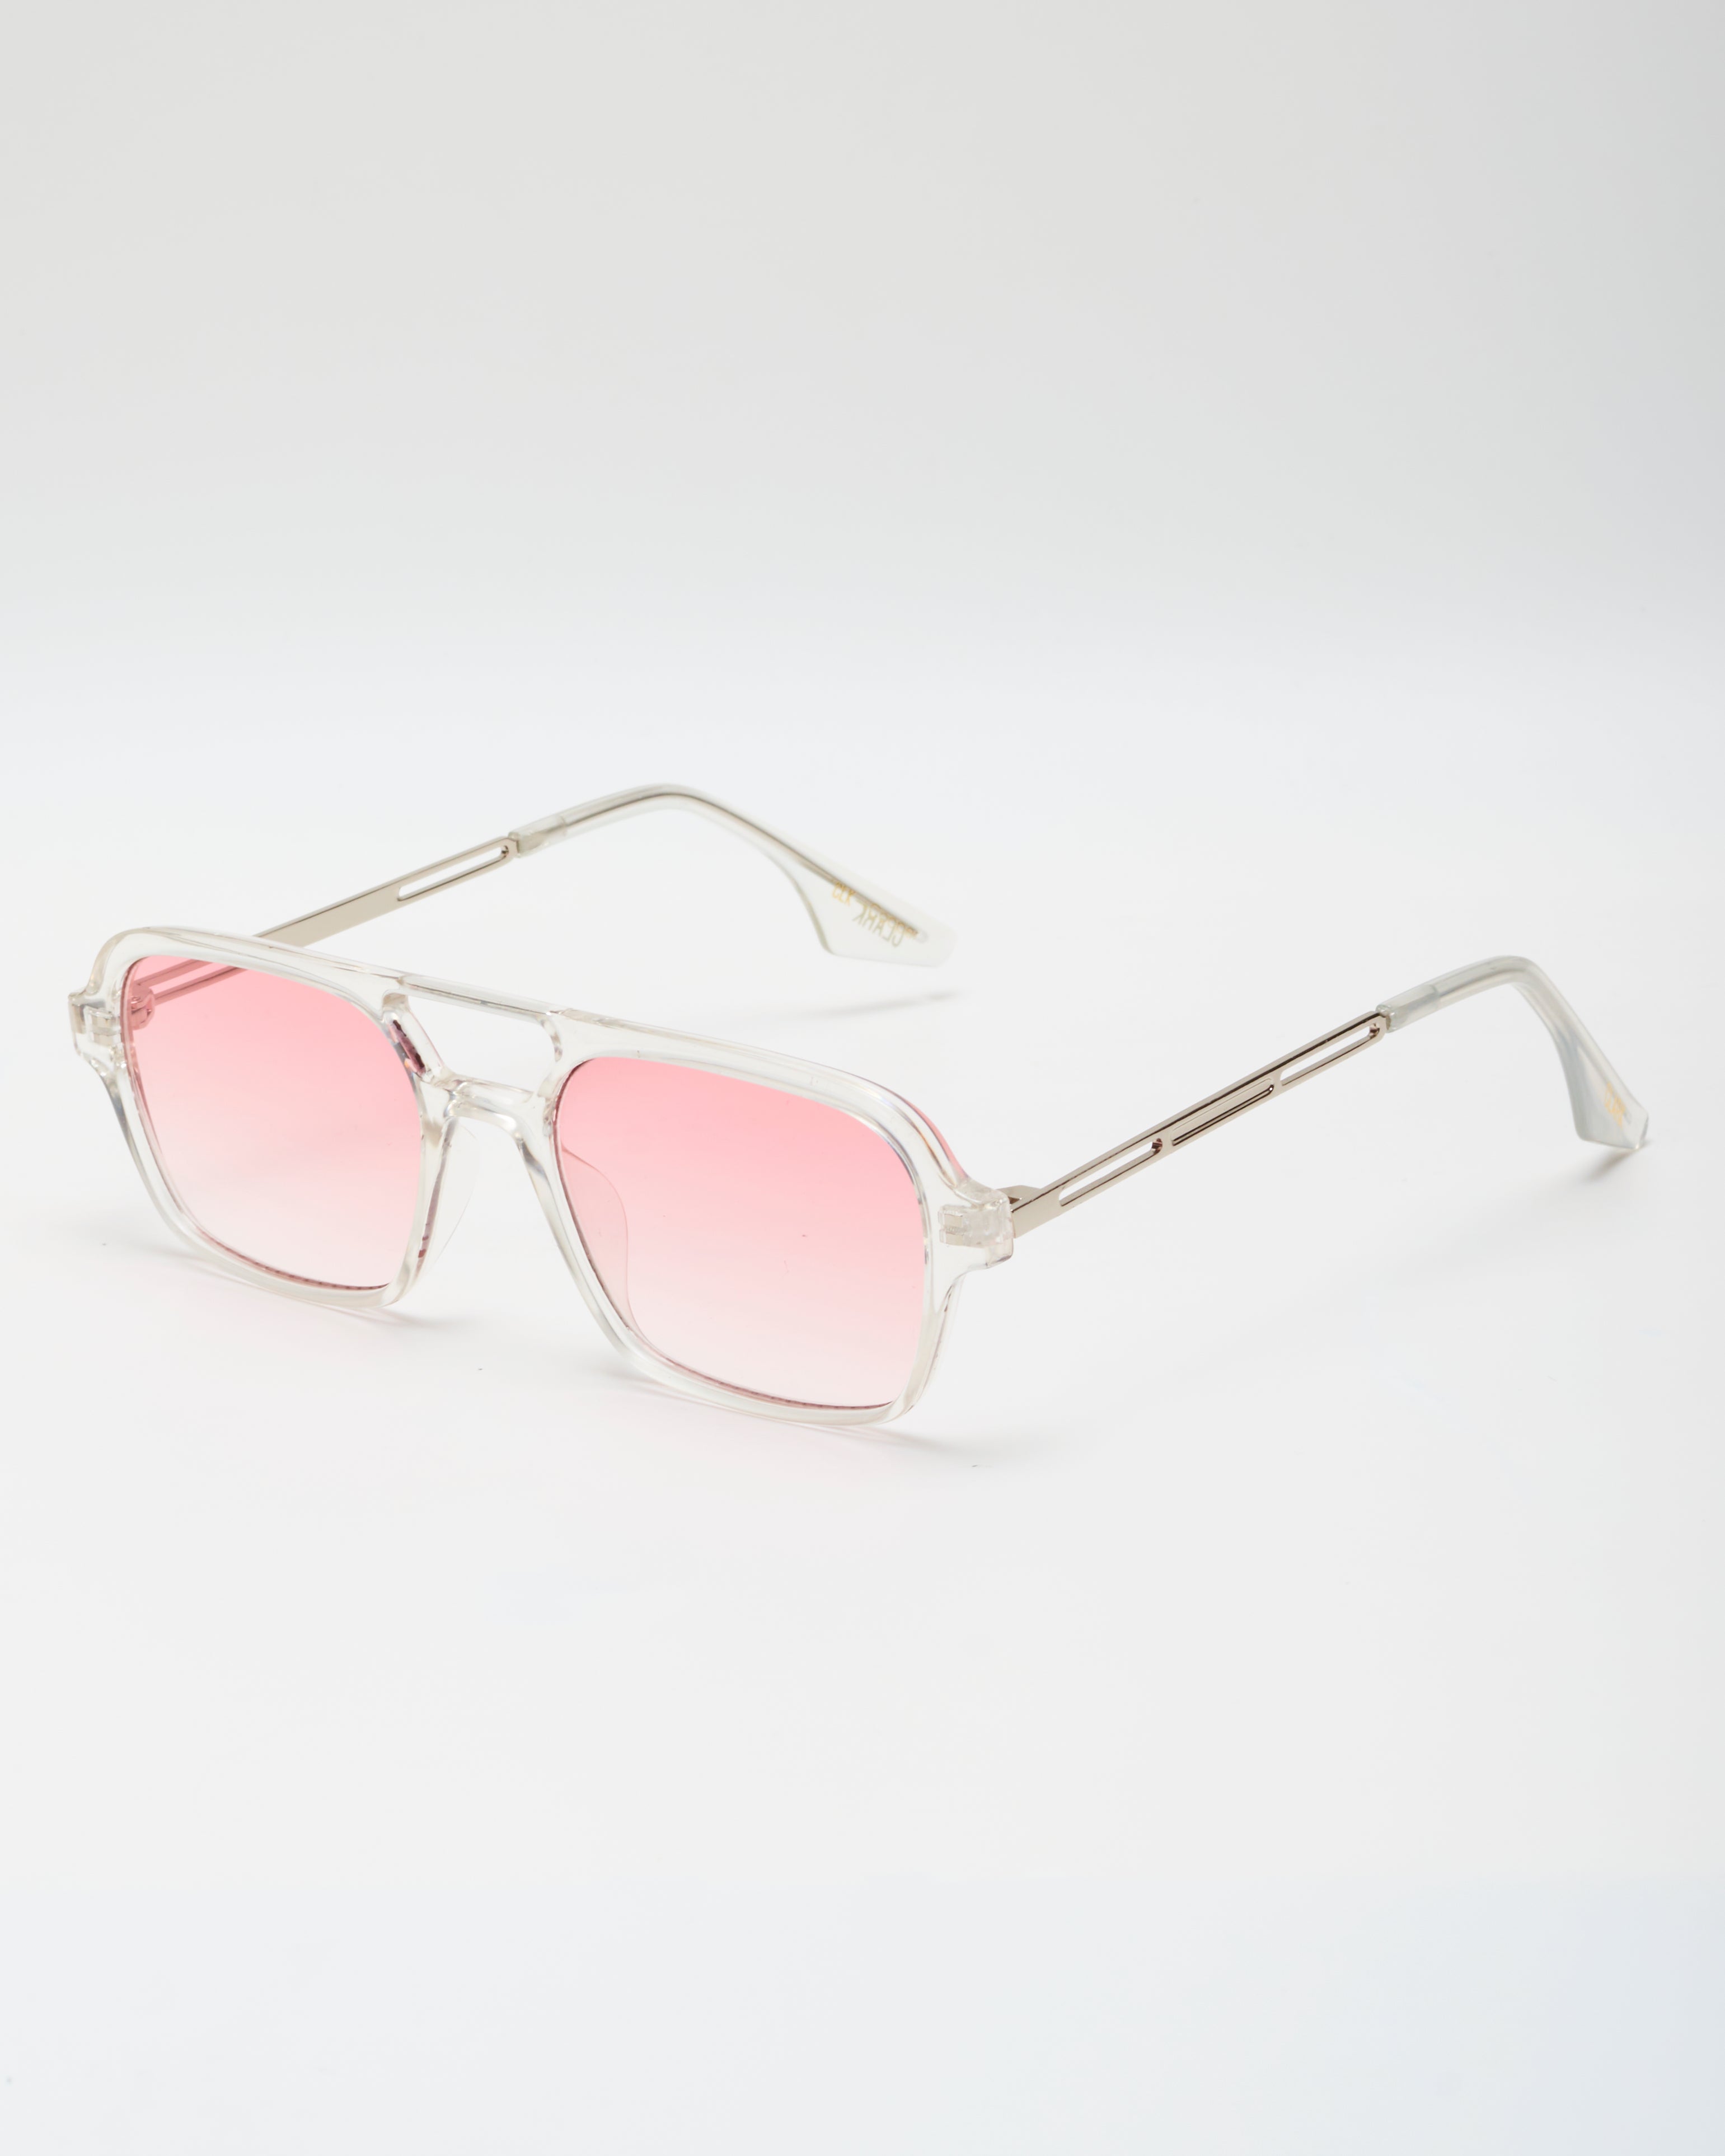 Lentes de sol/gafas-Aviador/clasicas-marco rosado-Proteccion 400- hombre/mujer- CLARK-COOPER SUNGLASSES – clarkshopcol